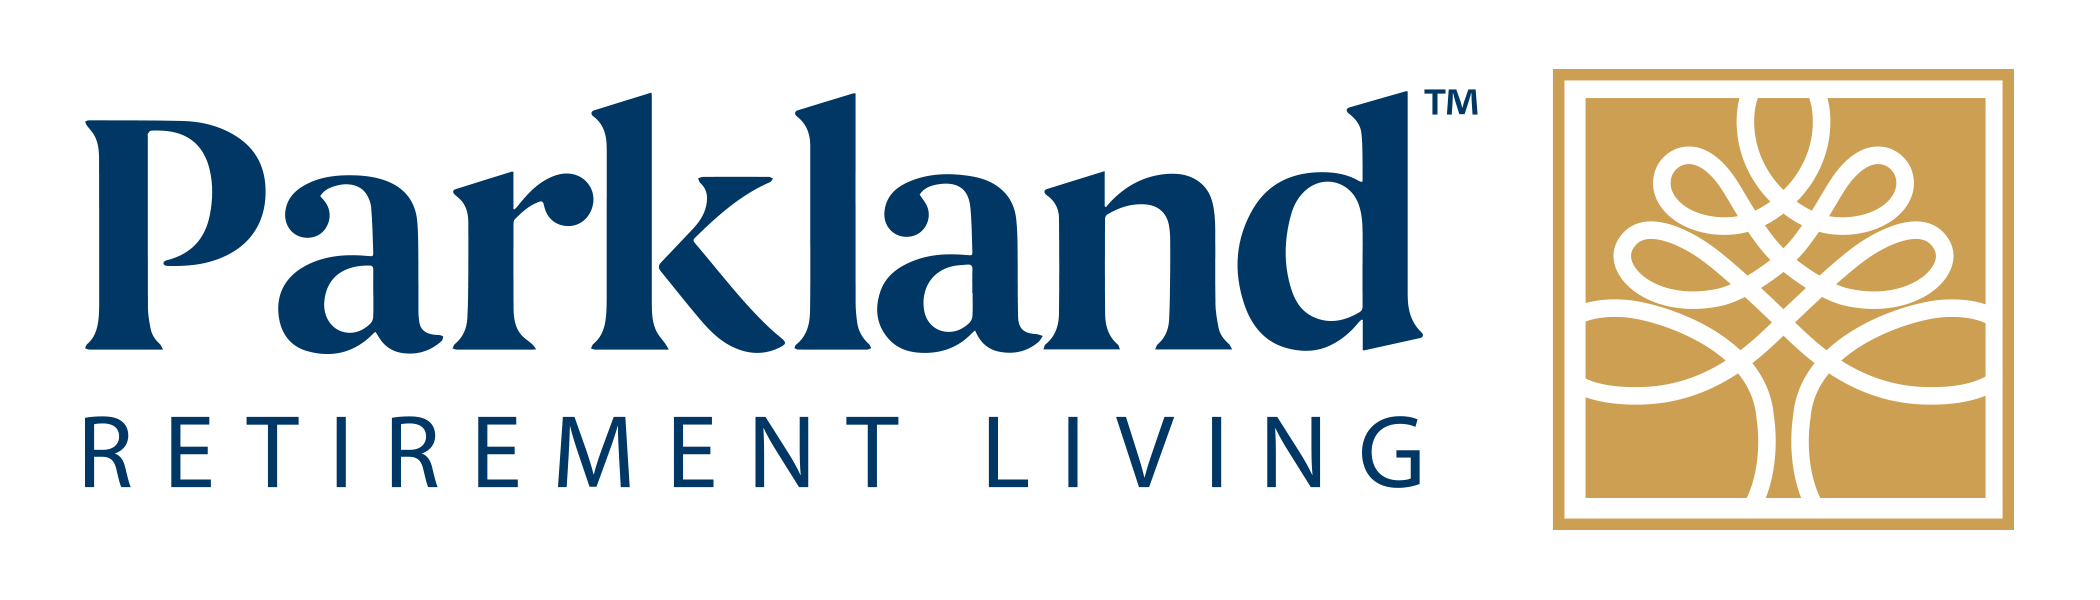 Parkland Retirement Living